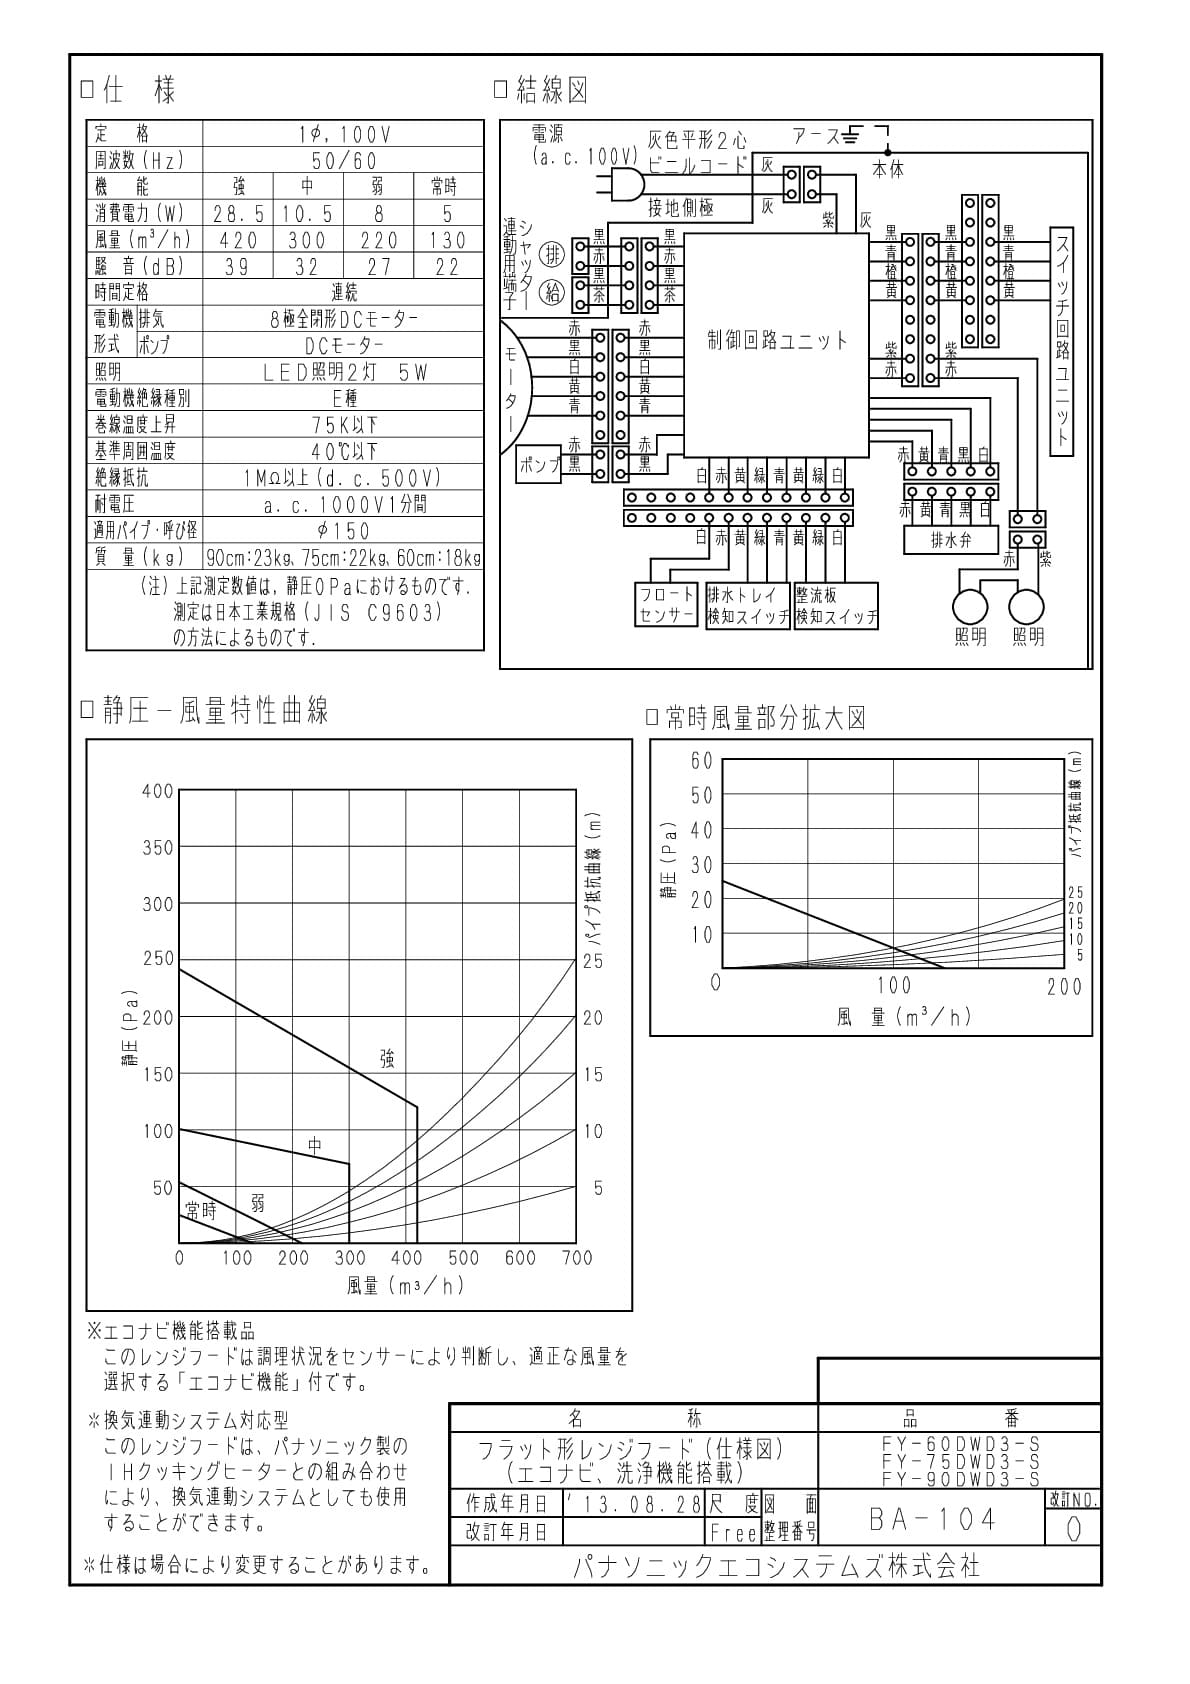 パナソニック FY-60DWD3-S商品図面 | 通販 プロストア ダイレクト